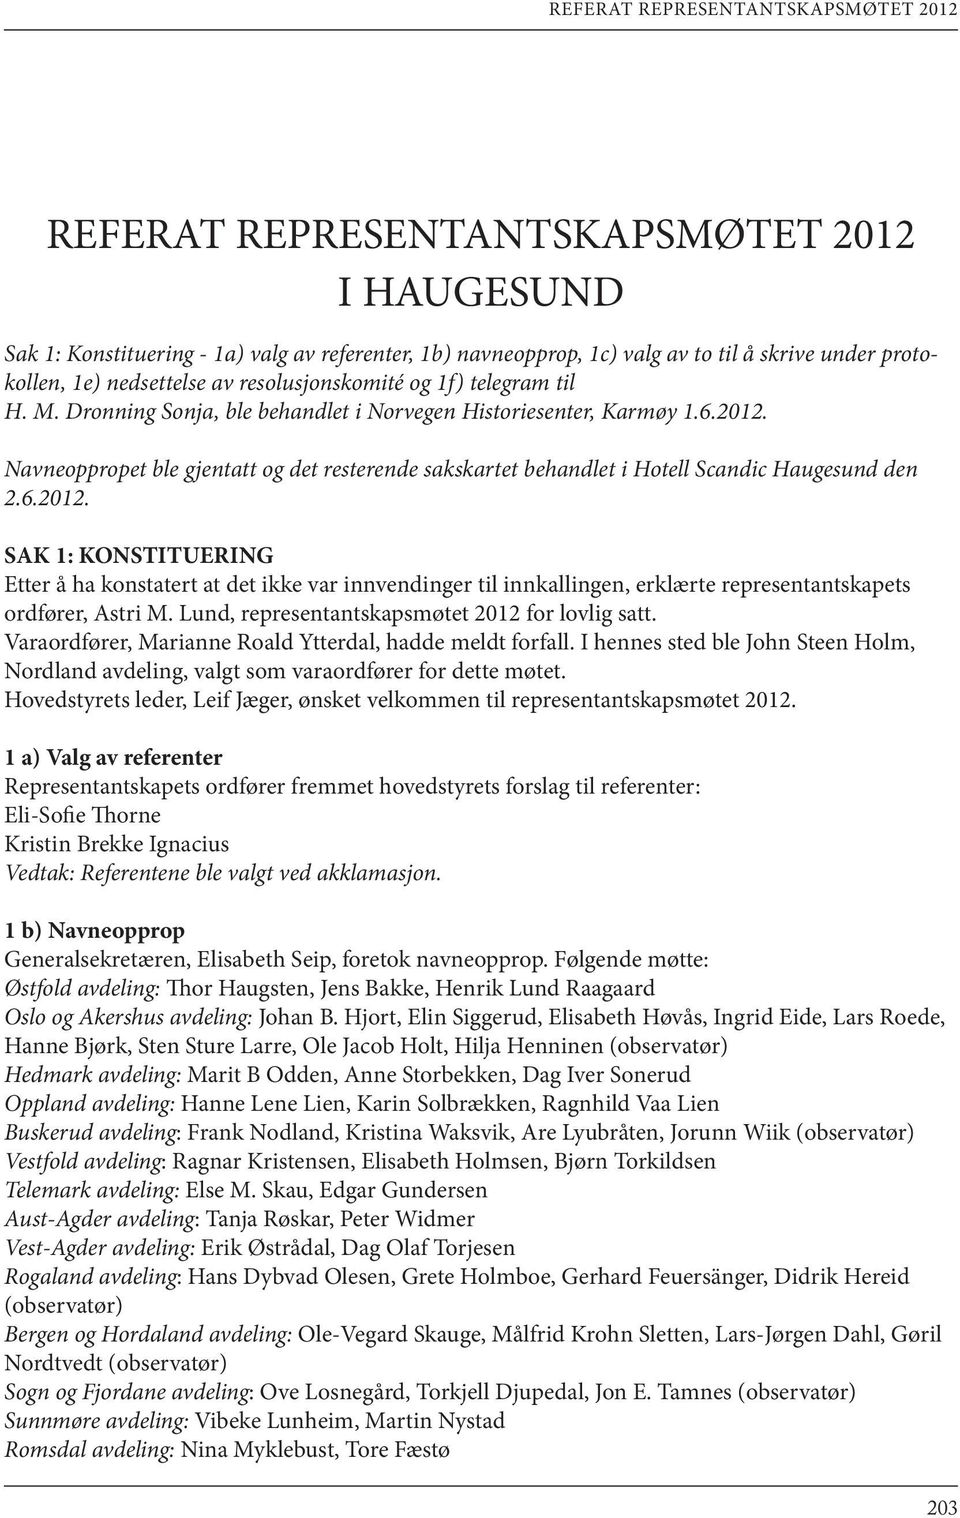 Navneoppropet ble gjentatt og det resterende sakskartet behandlet i Hotell Scandic Haugesund den 2.6.2012.